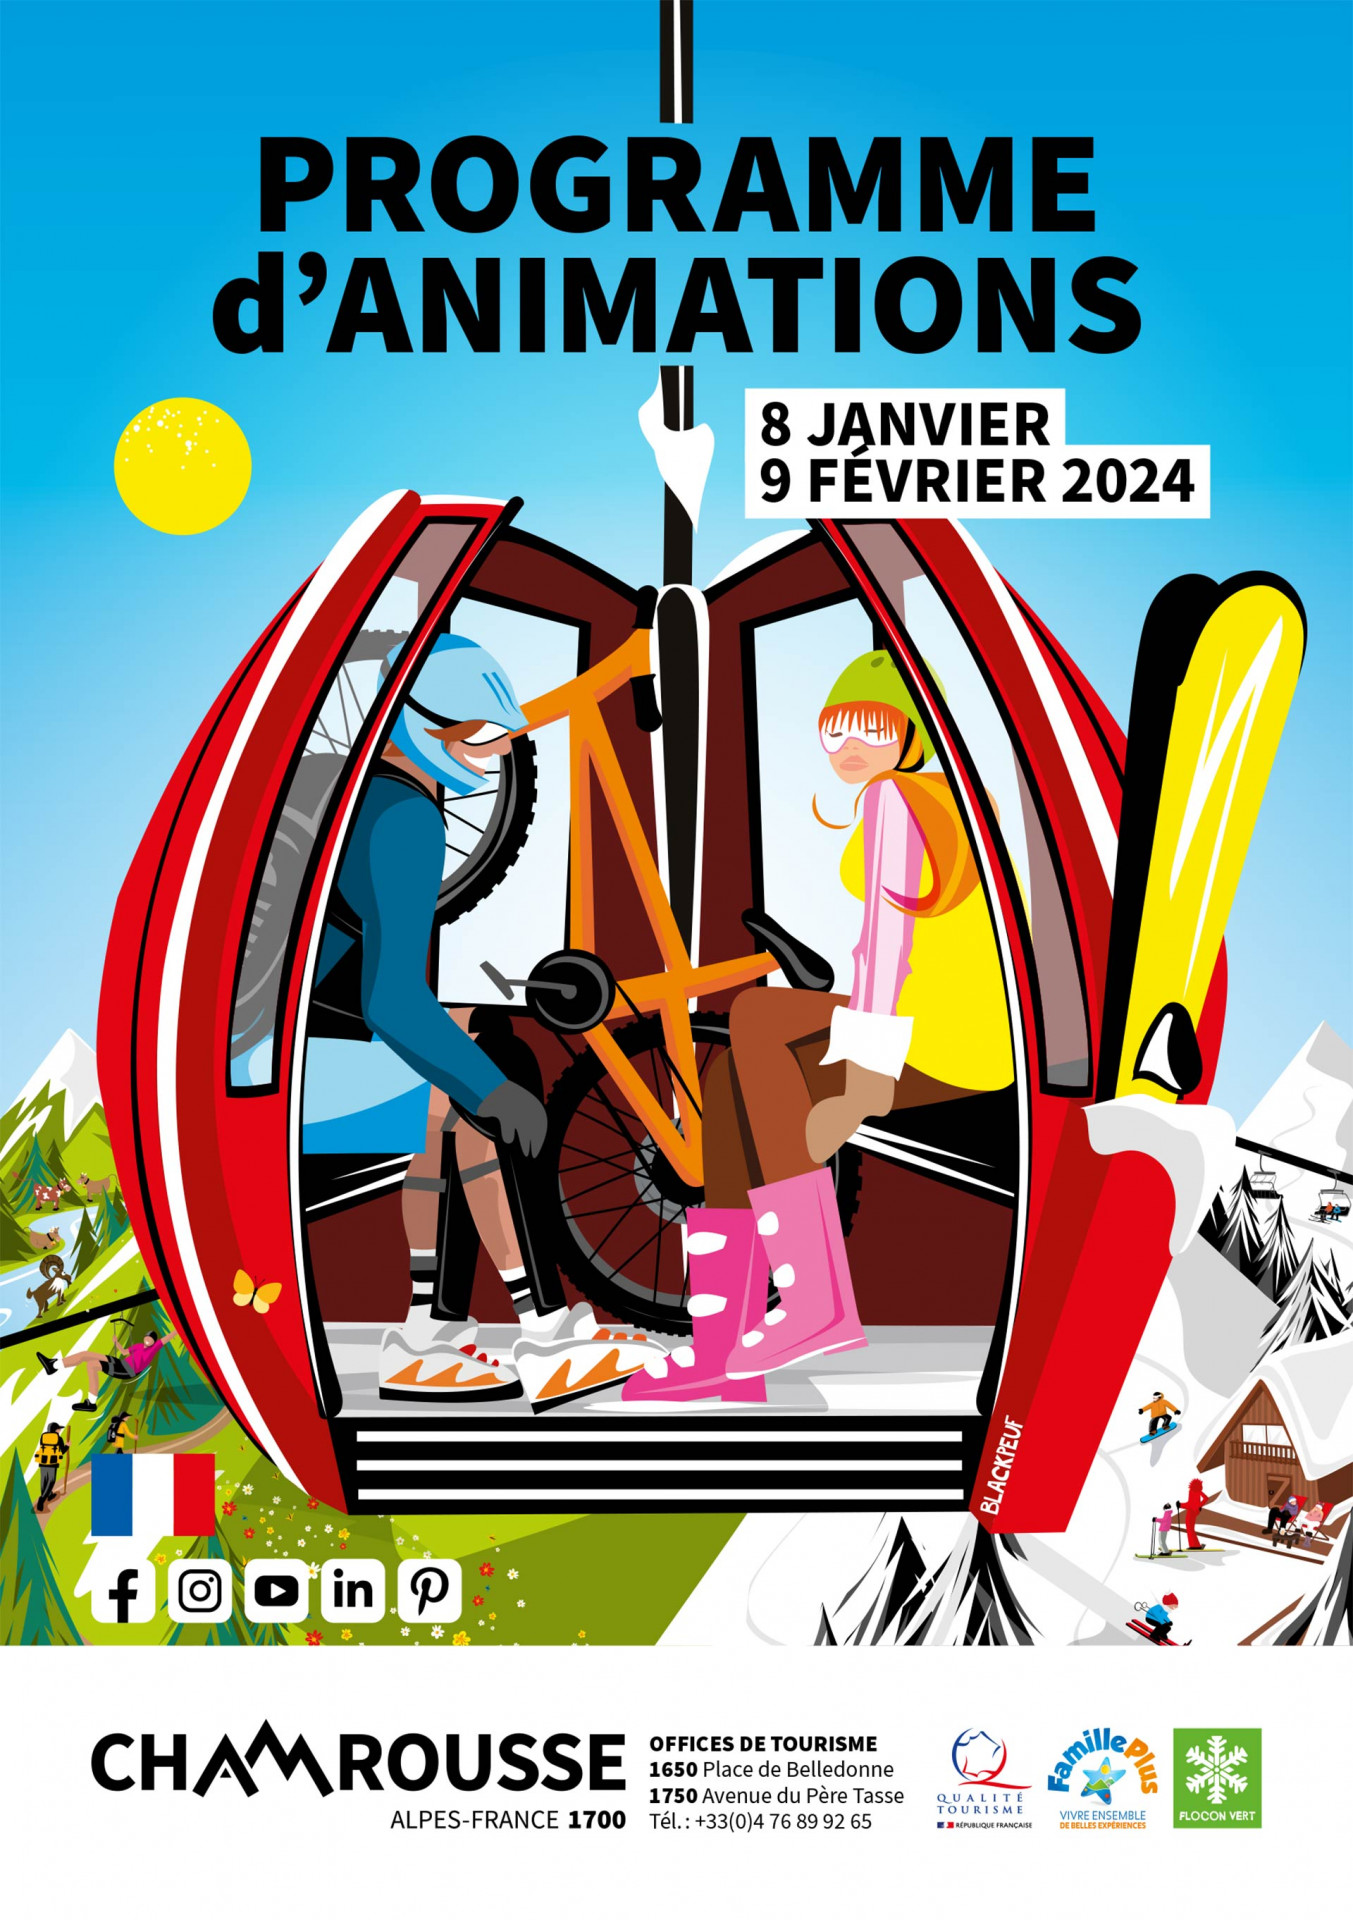 Chamrousse programme animation événement hiver janvier 2024 station ski montagne grenoble isère alpes france